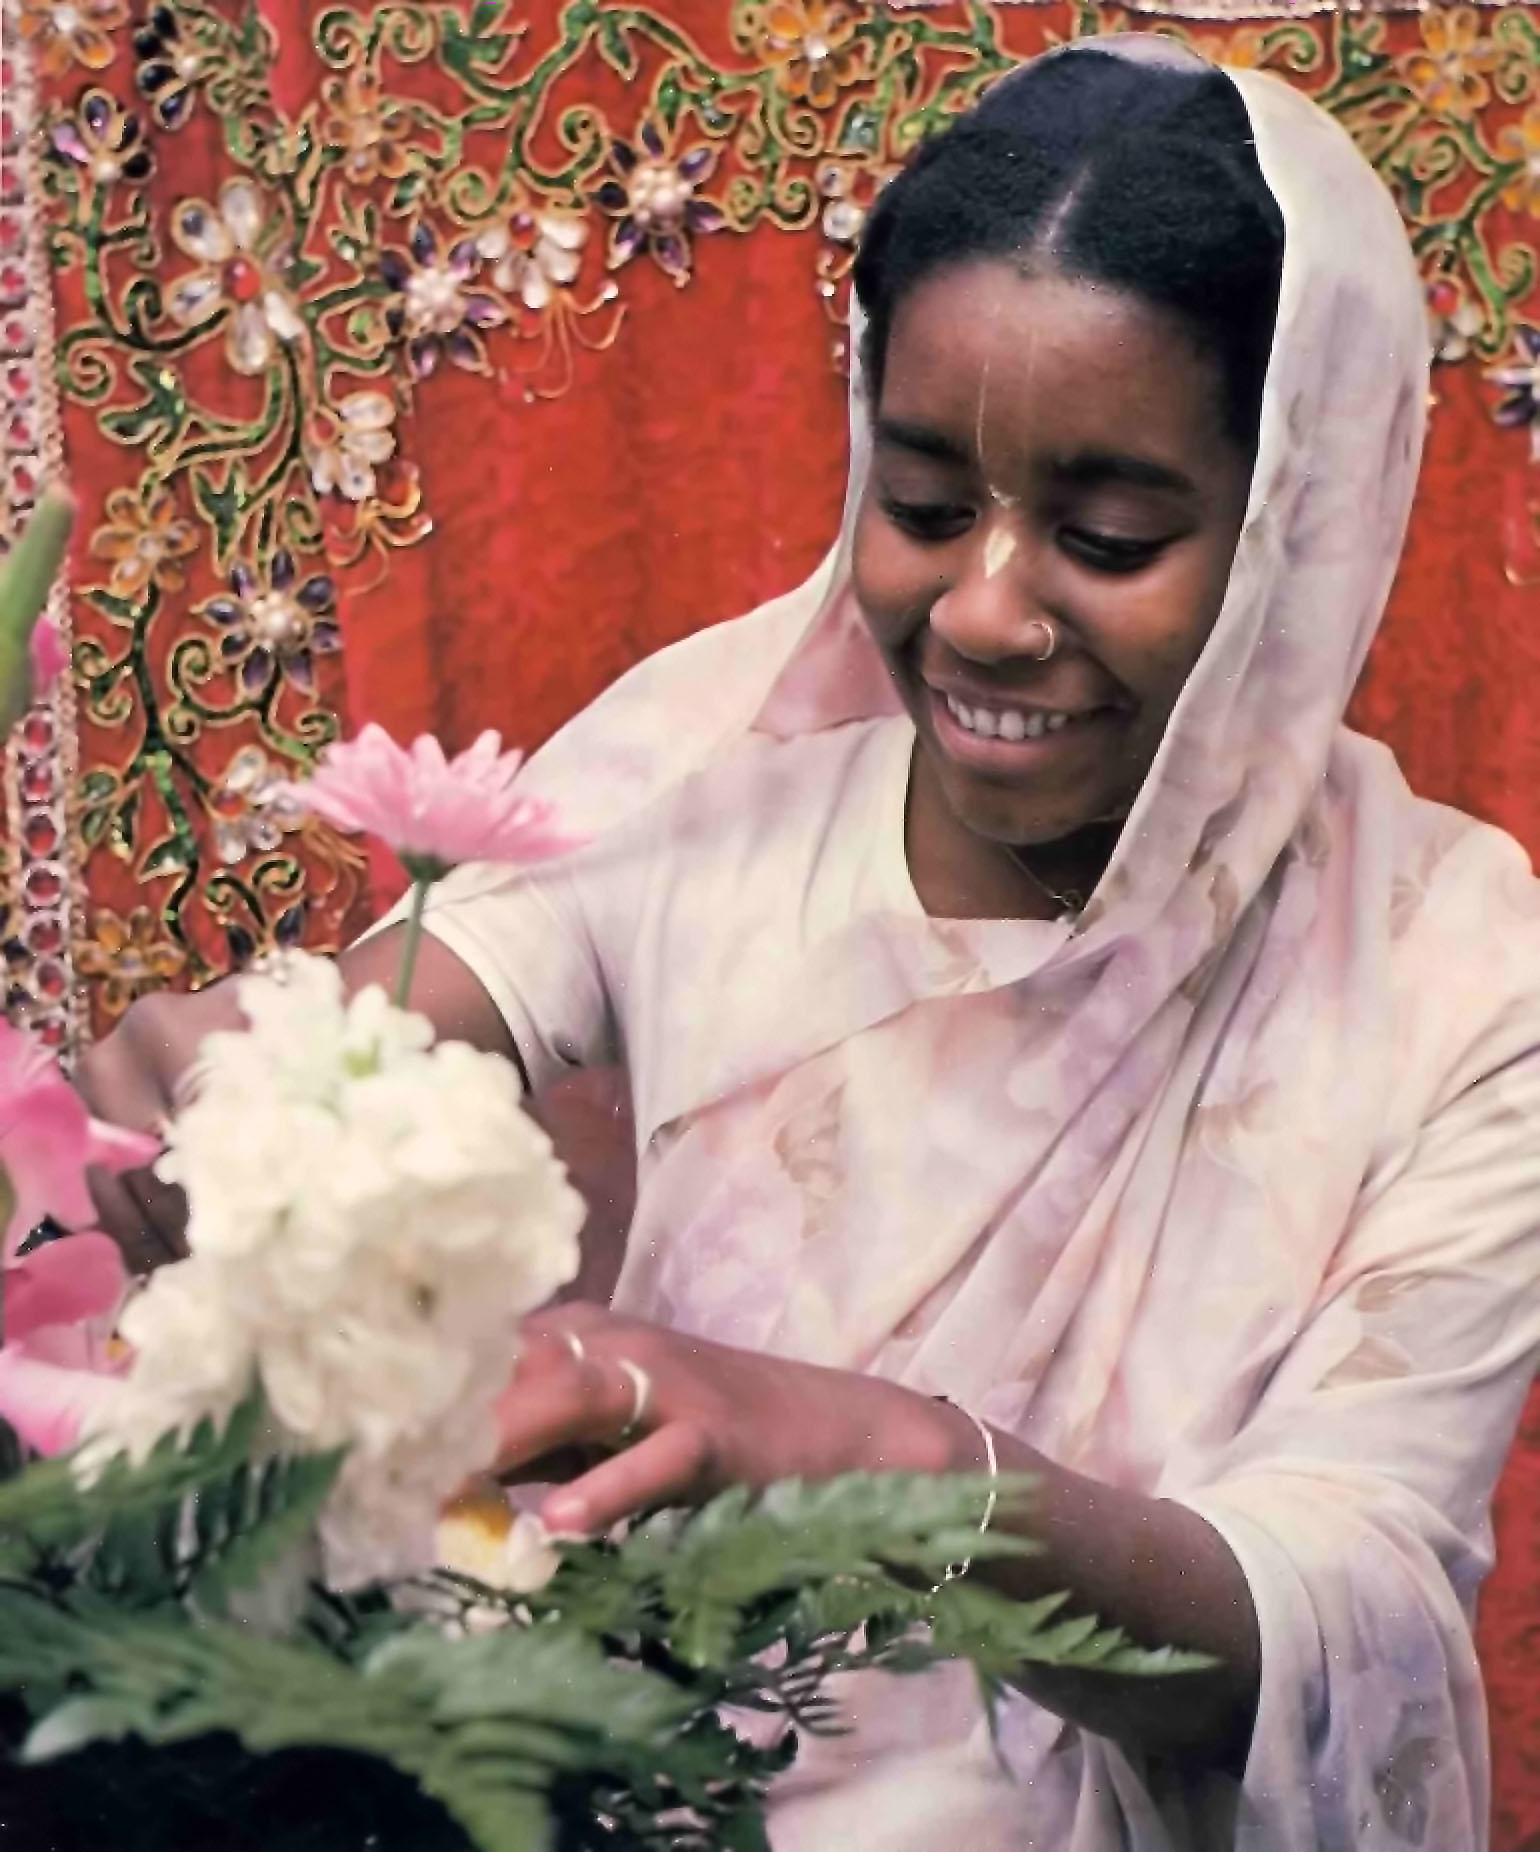 ISKCON devotee makes flower arrangements for offering to the Deities at Hare Krishna Temple. 1976.